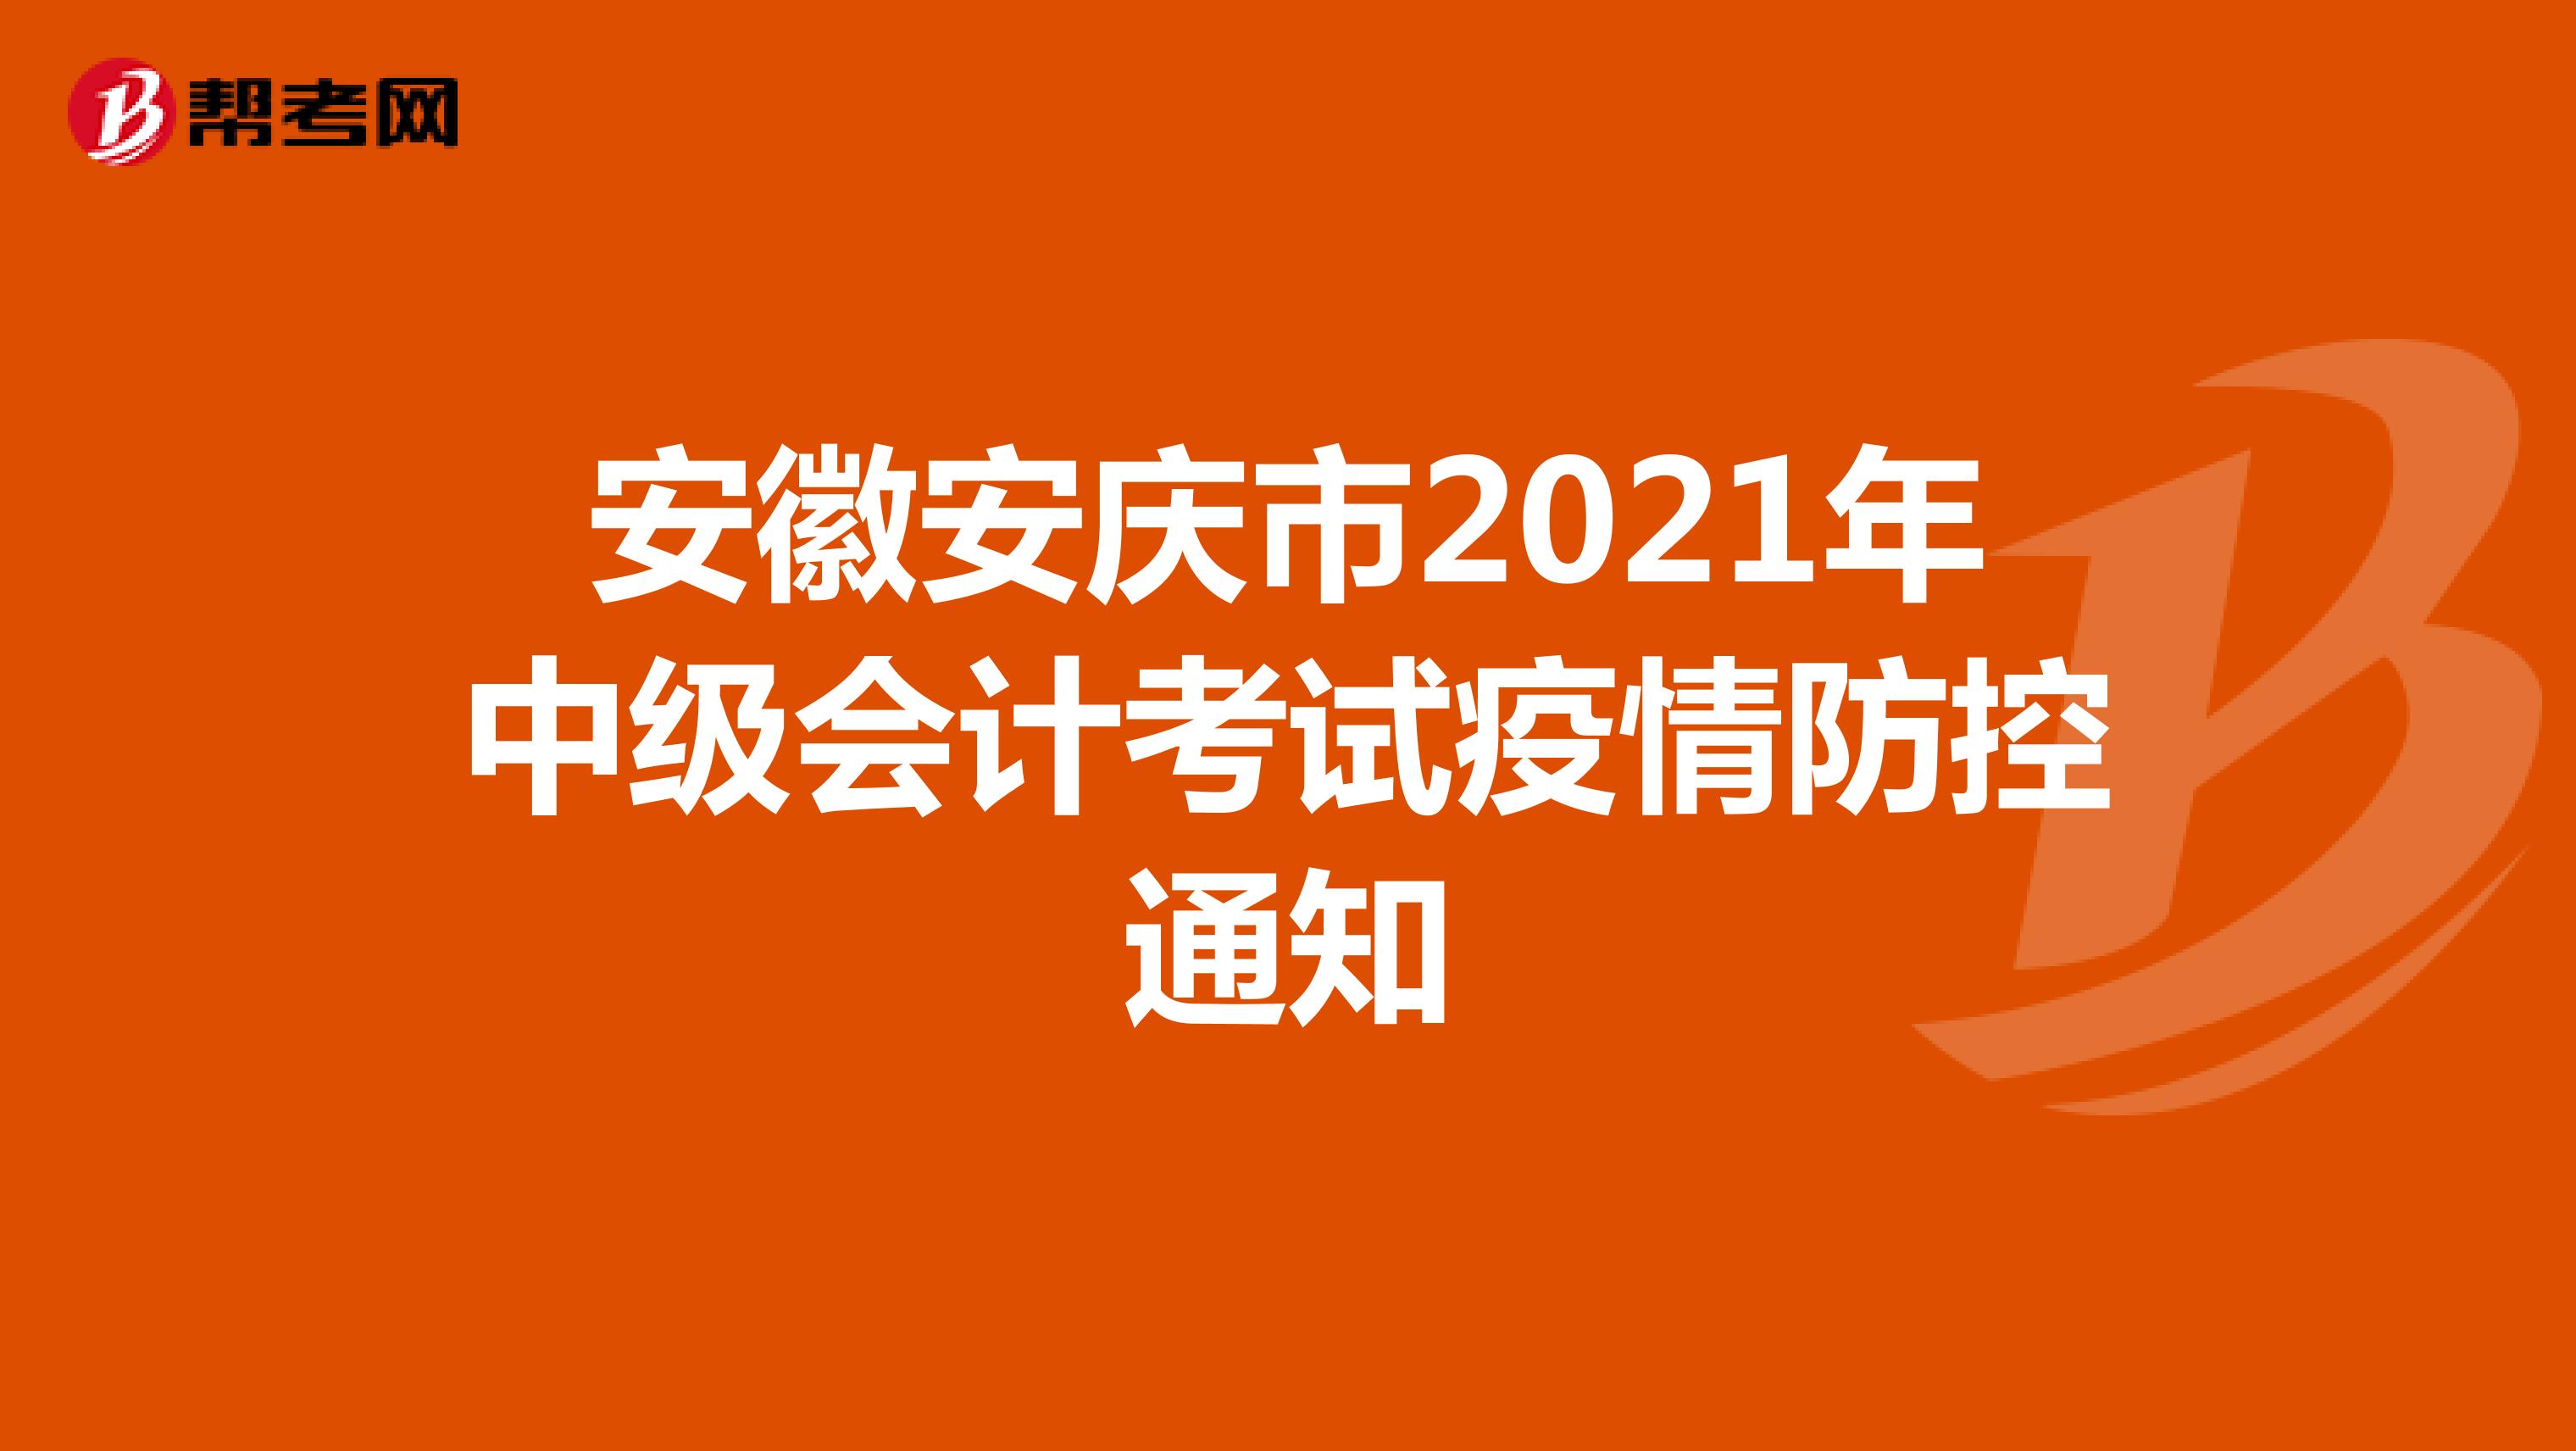 安徽安庆市2021年中级会计考试疫情防控通知